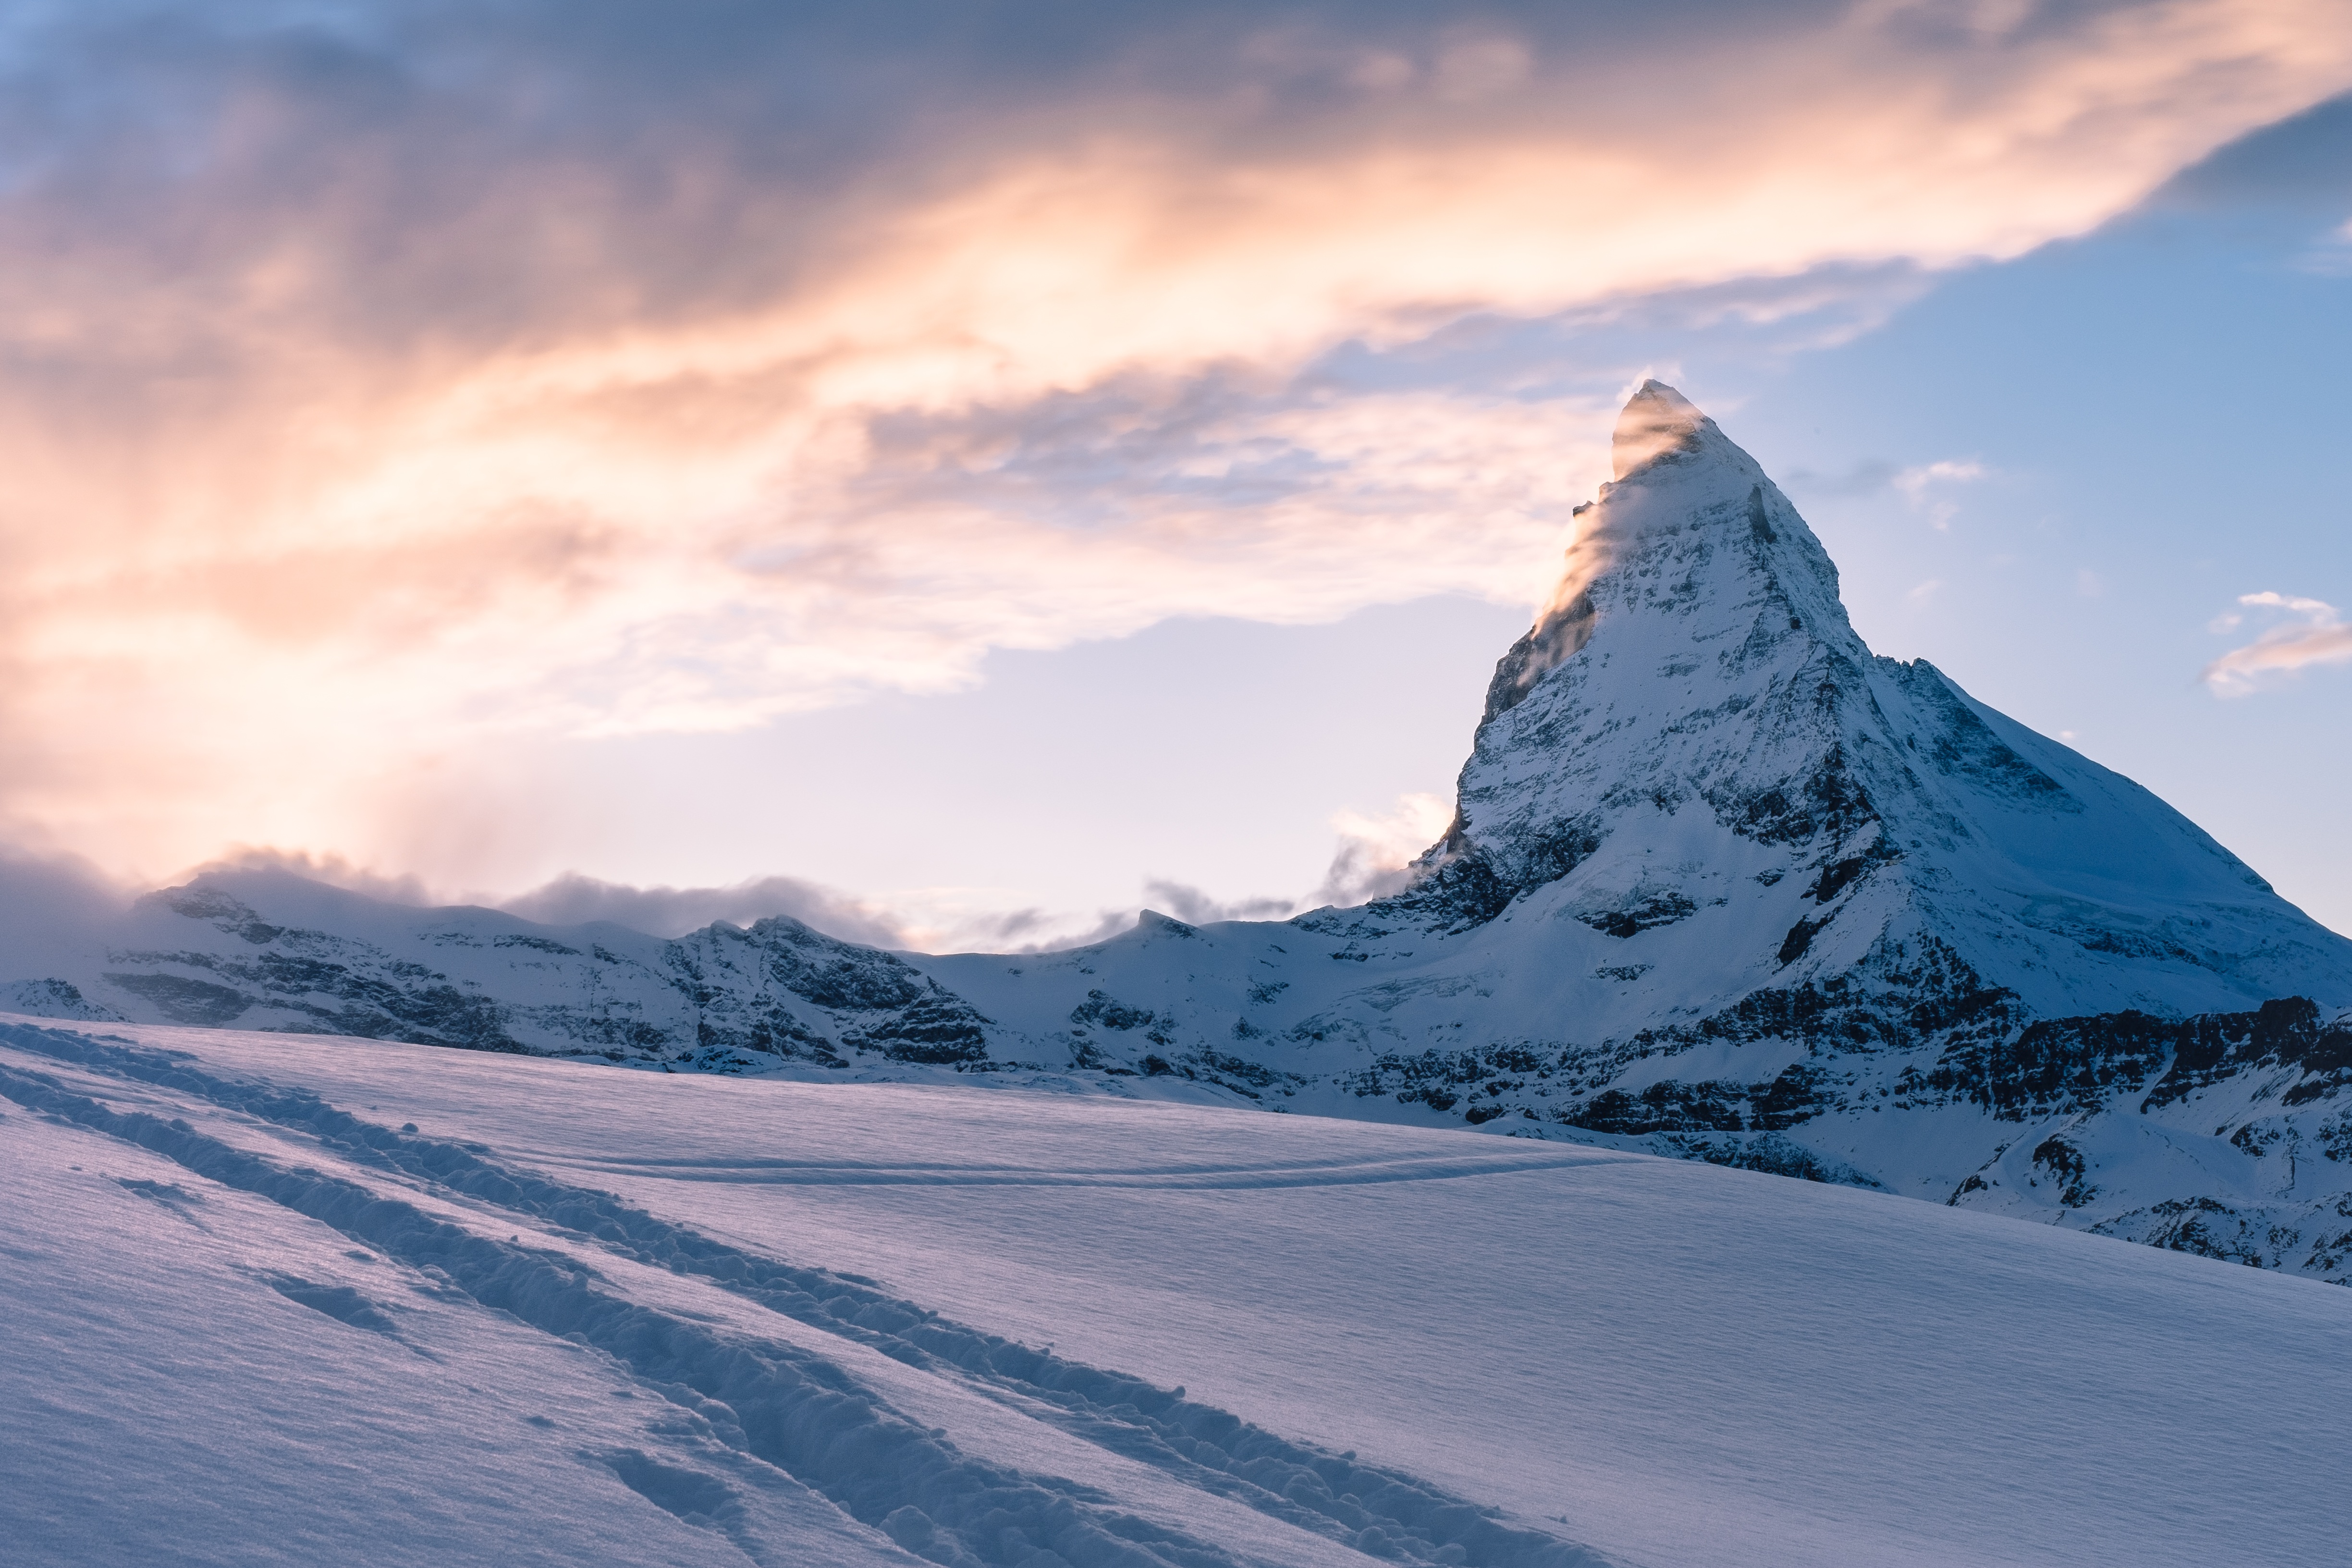 Обои пейзаж, природа, на открытом воздухе, рок, горы, снег, зима - бесплатные картинки на Fonwall